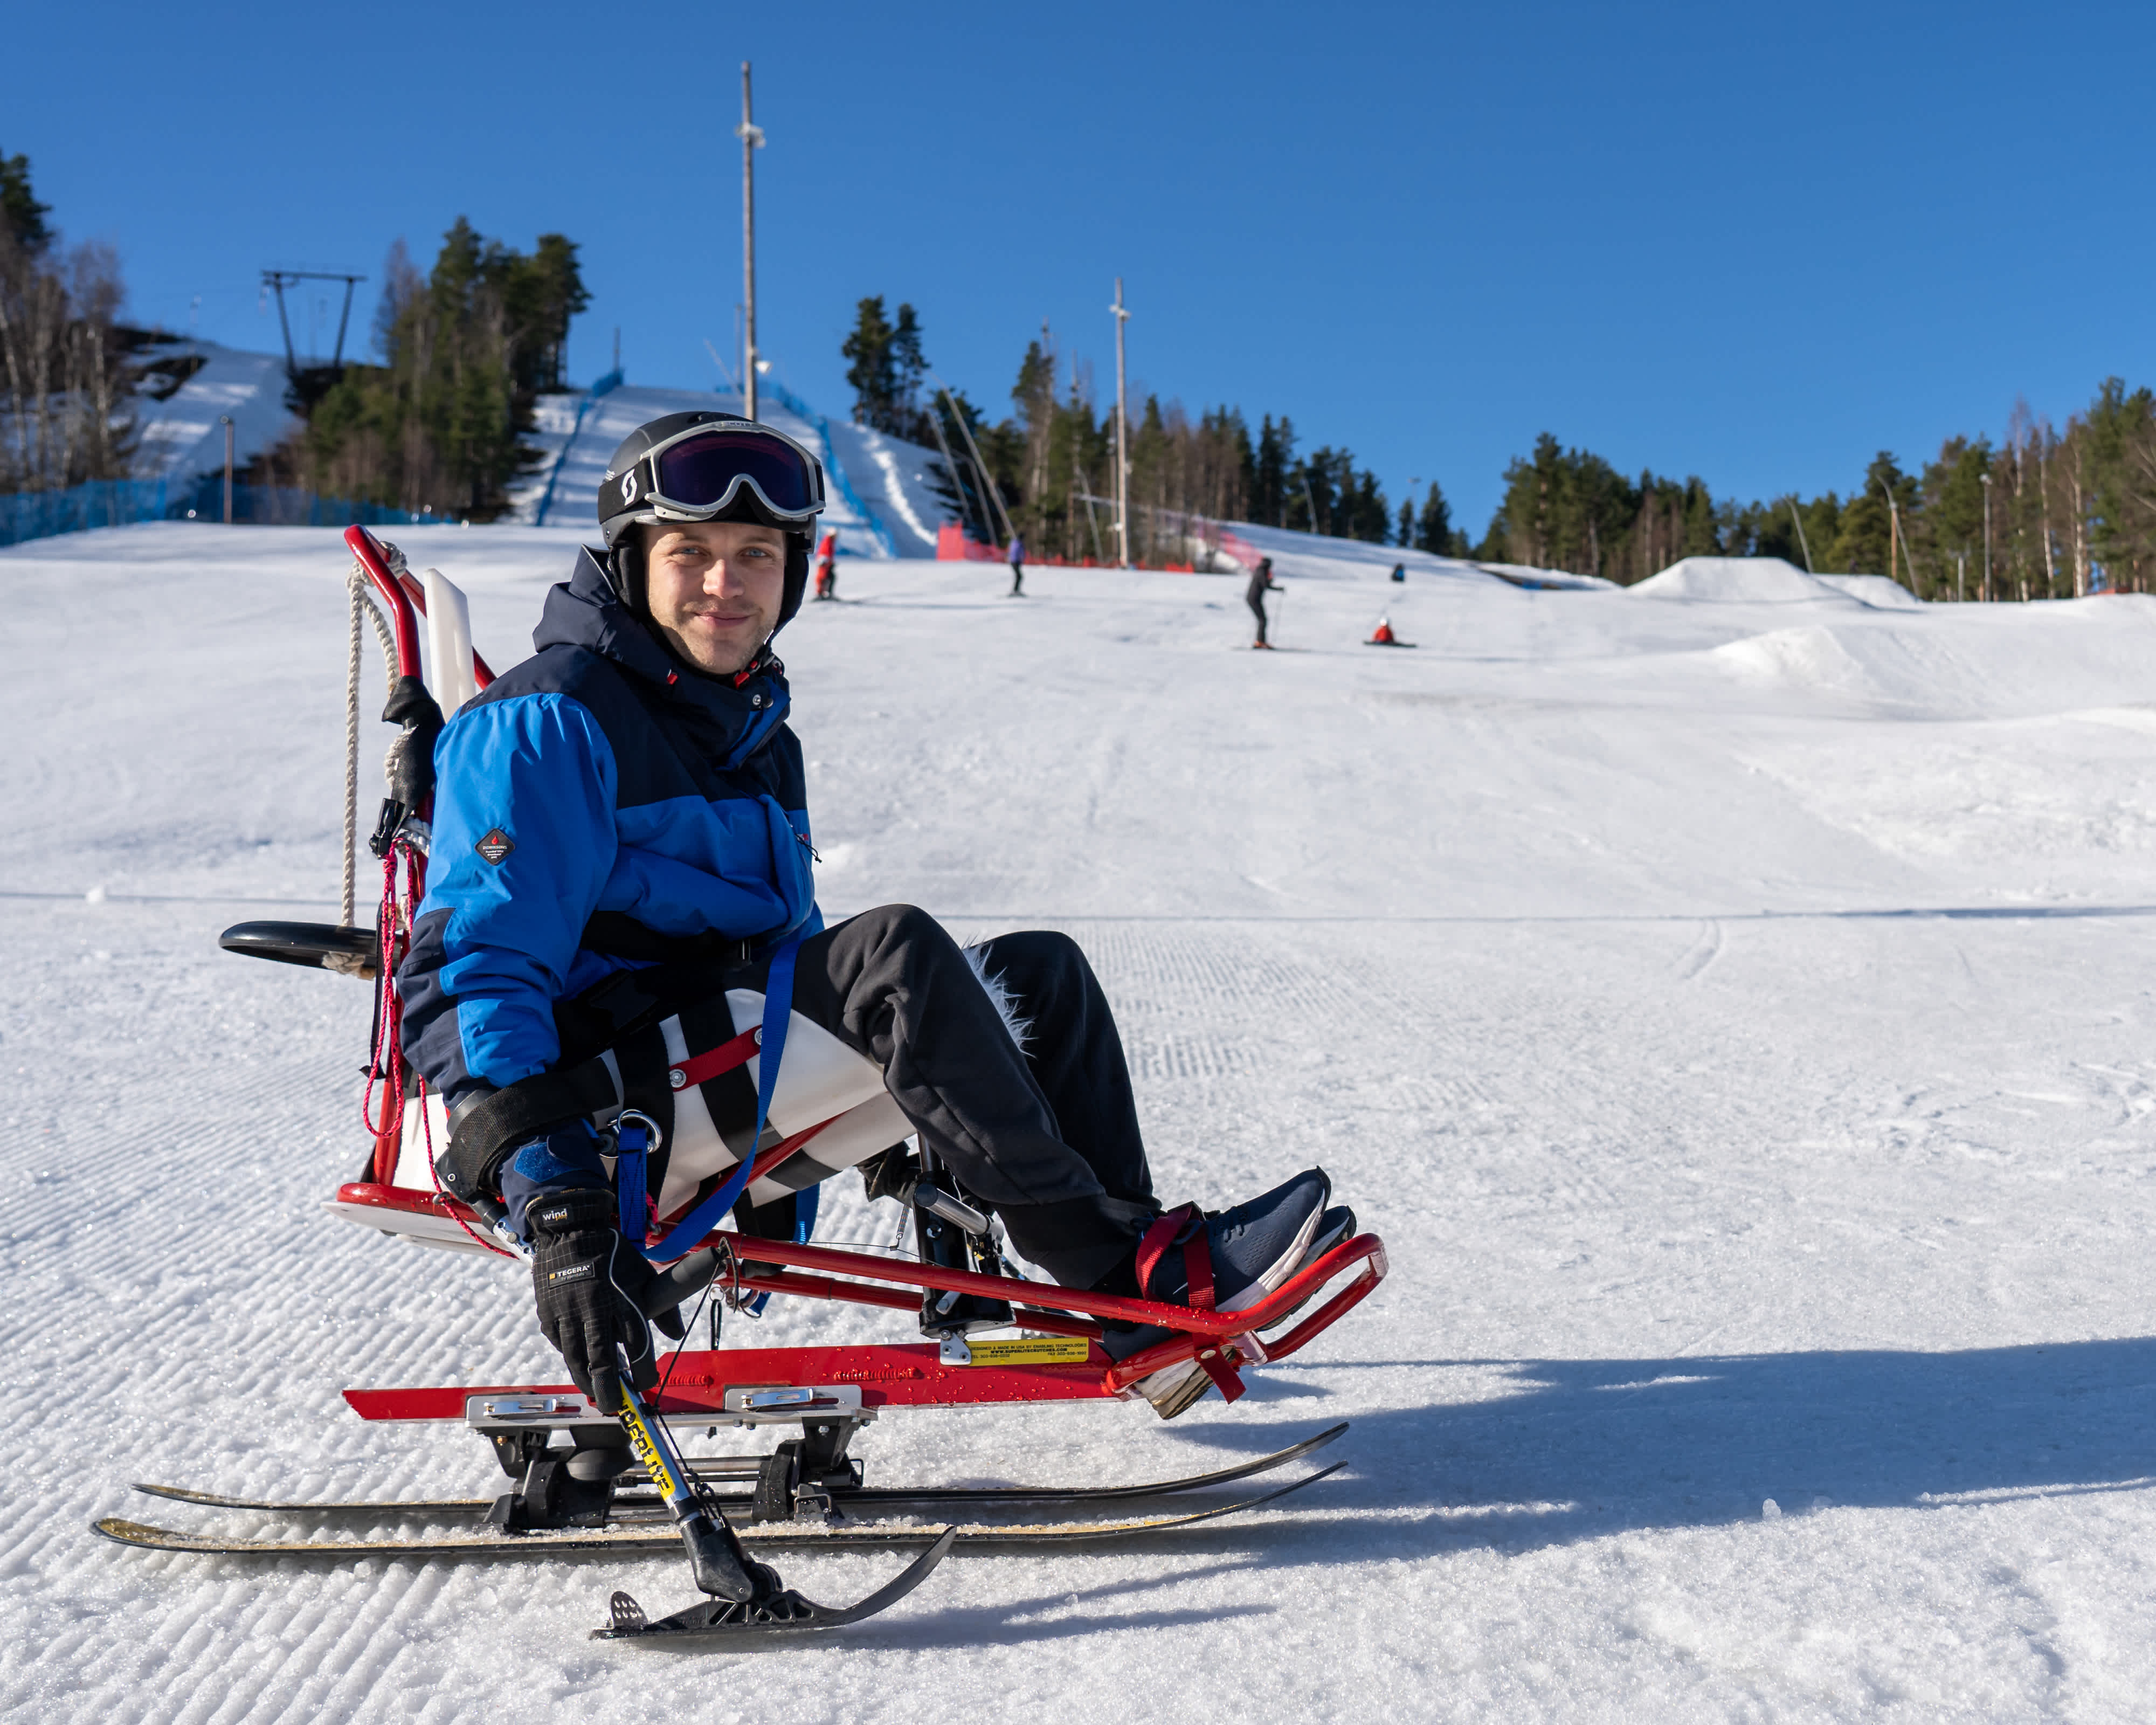 En skidåkare på sitski i slalombacken tittar in i kameran.